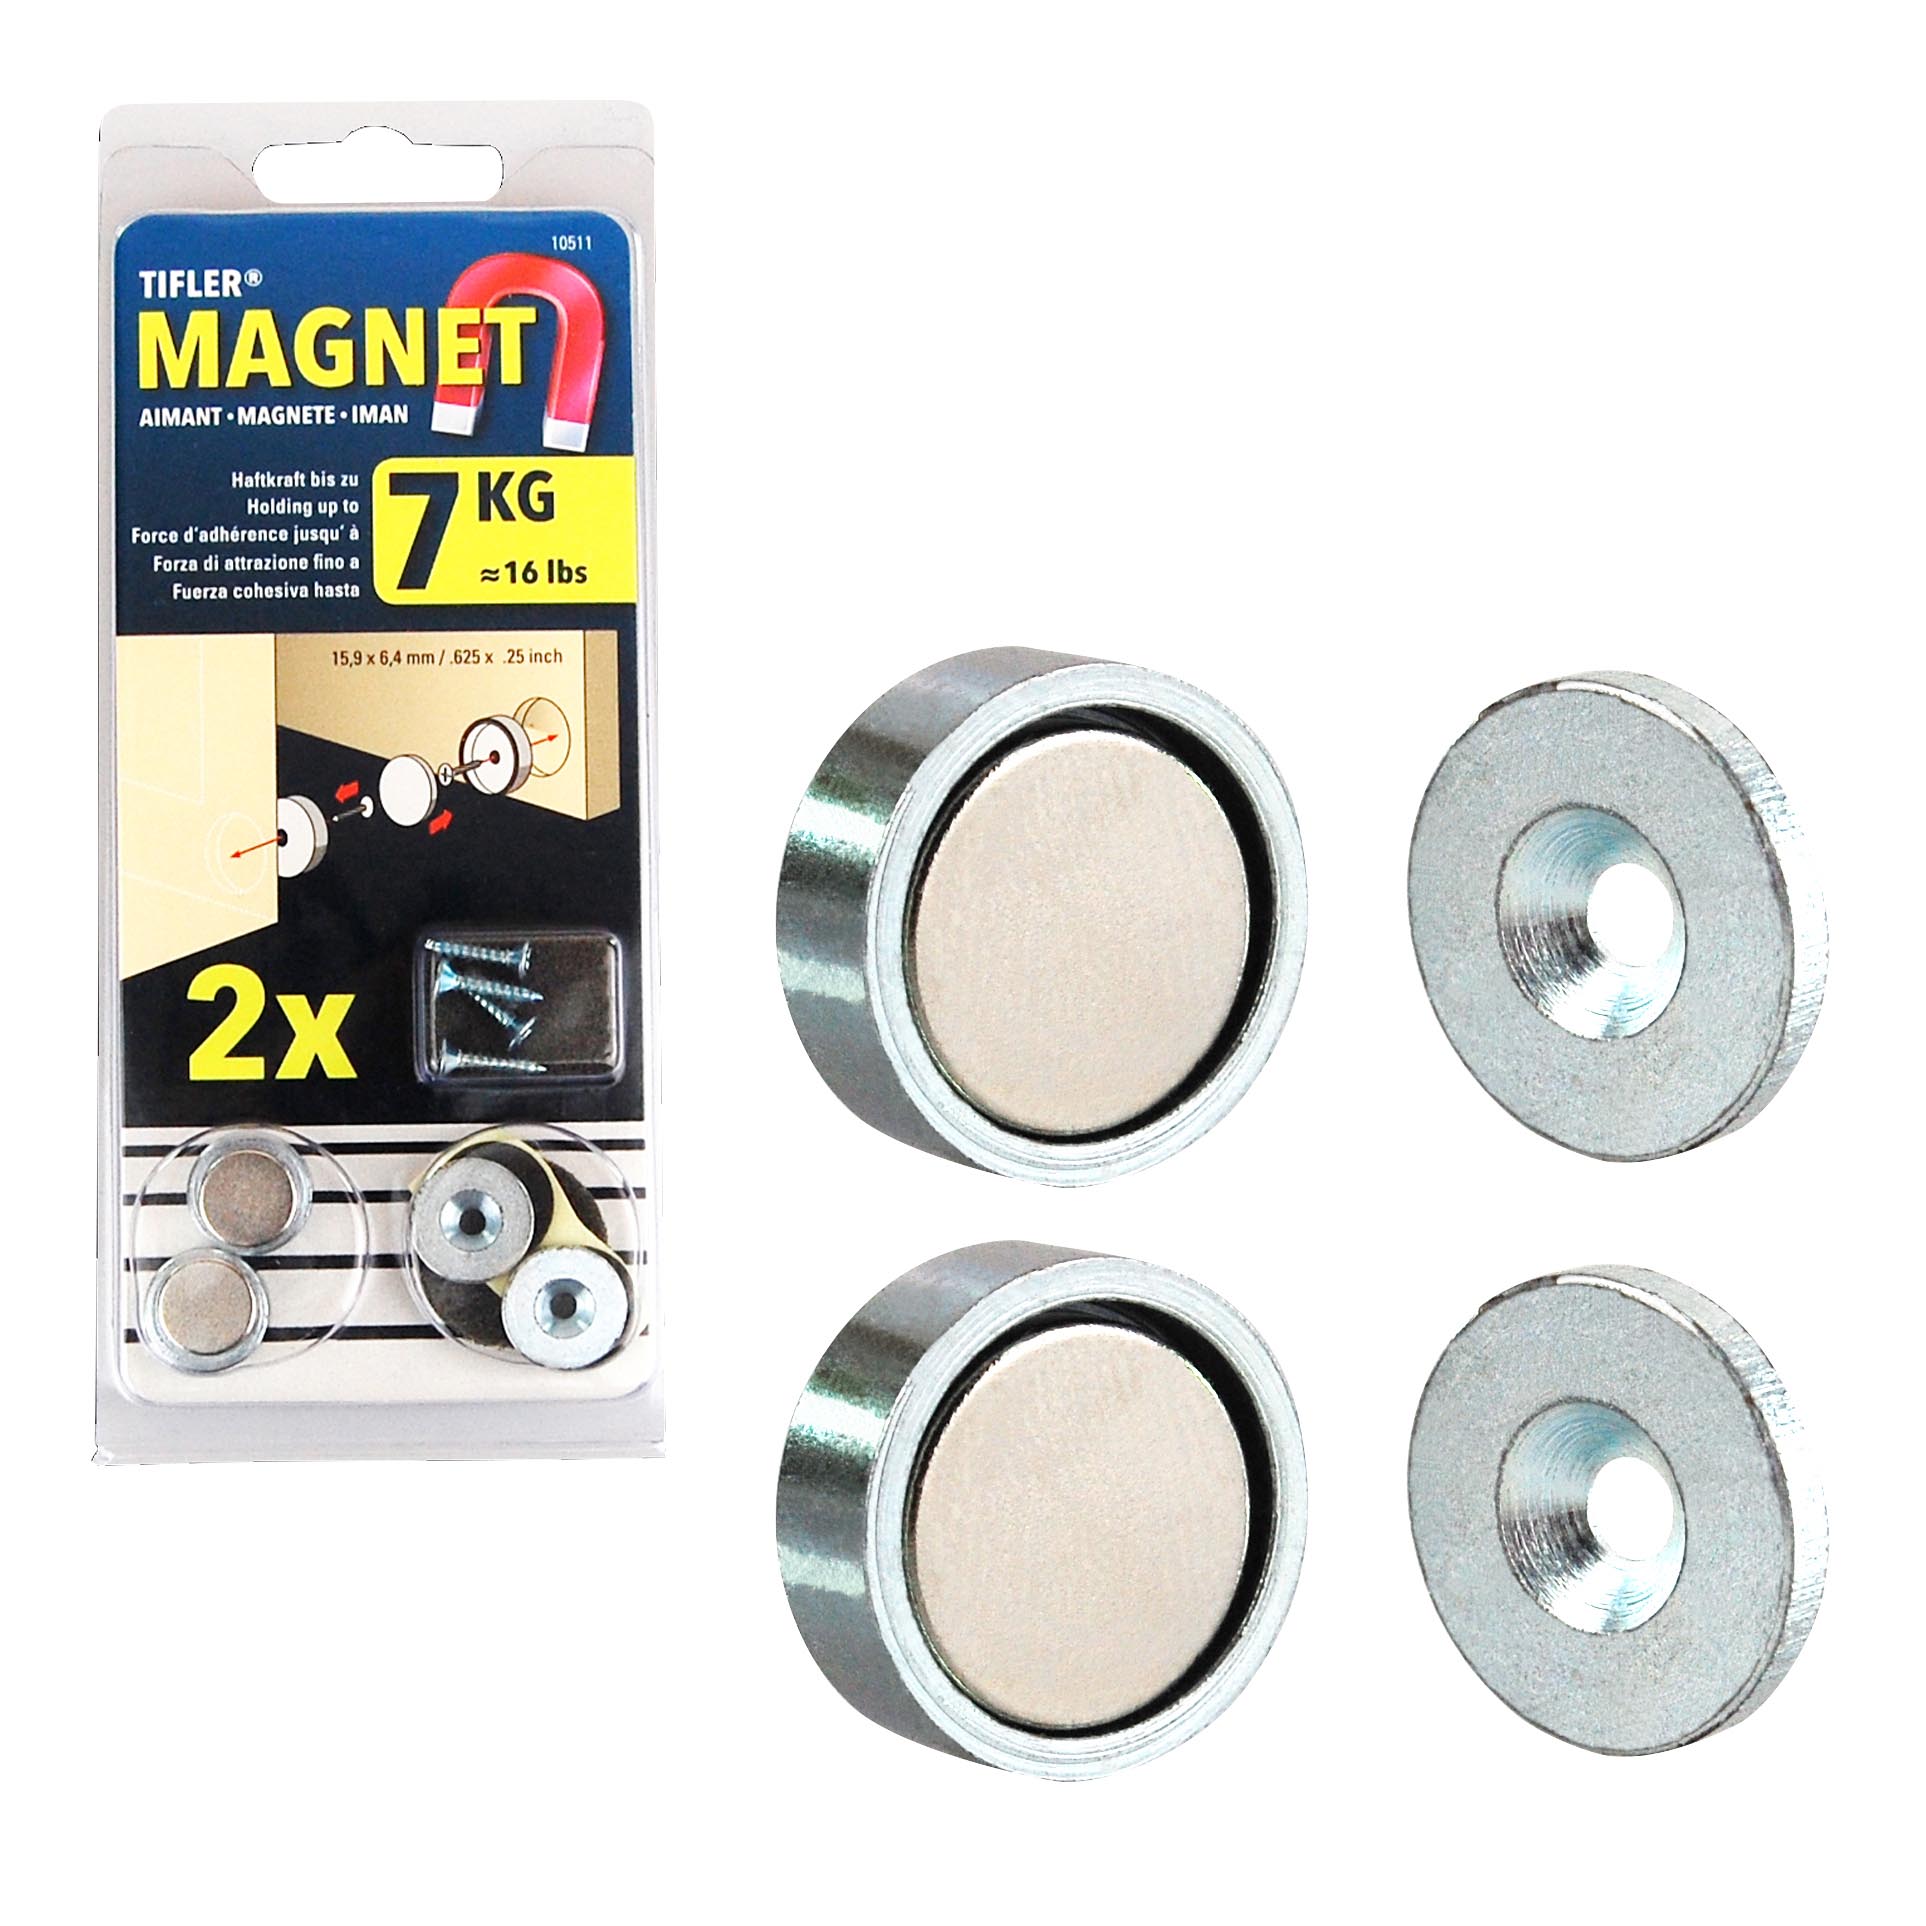 Starke Neodym-Magnete halten sich in den Näpfen der Magnetschnapper.